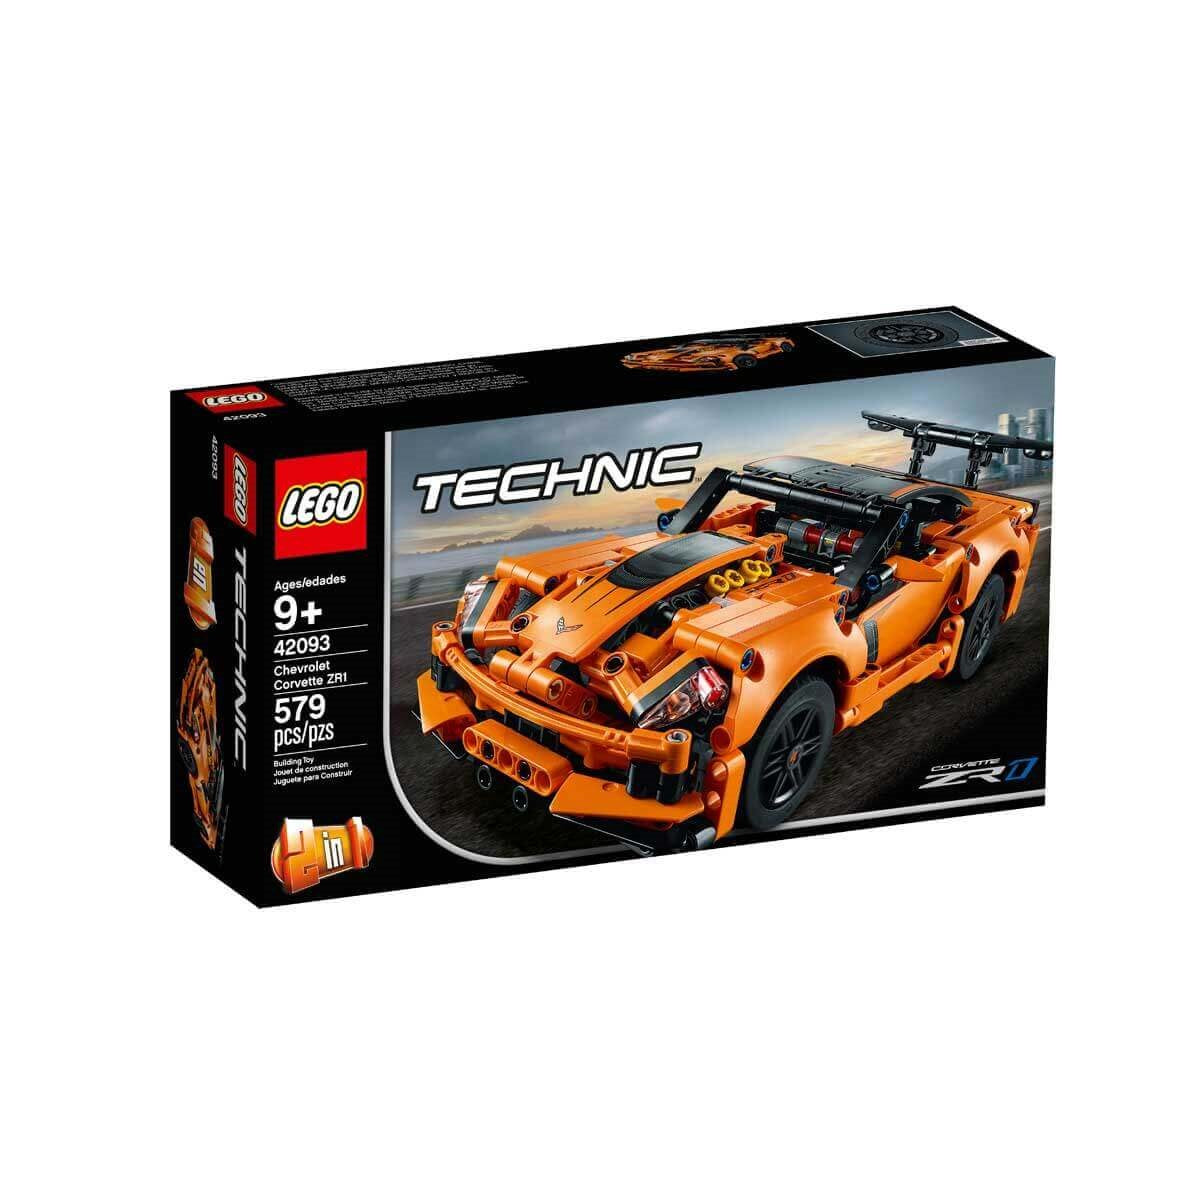 Lego Technic Chevrolet Corvette ZR1 42093 | Toysall